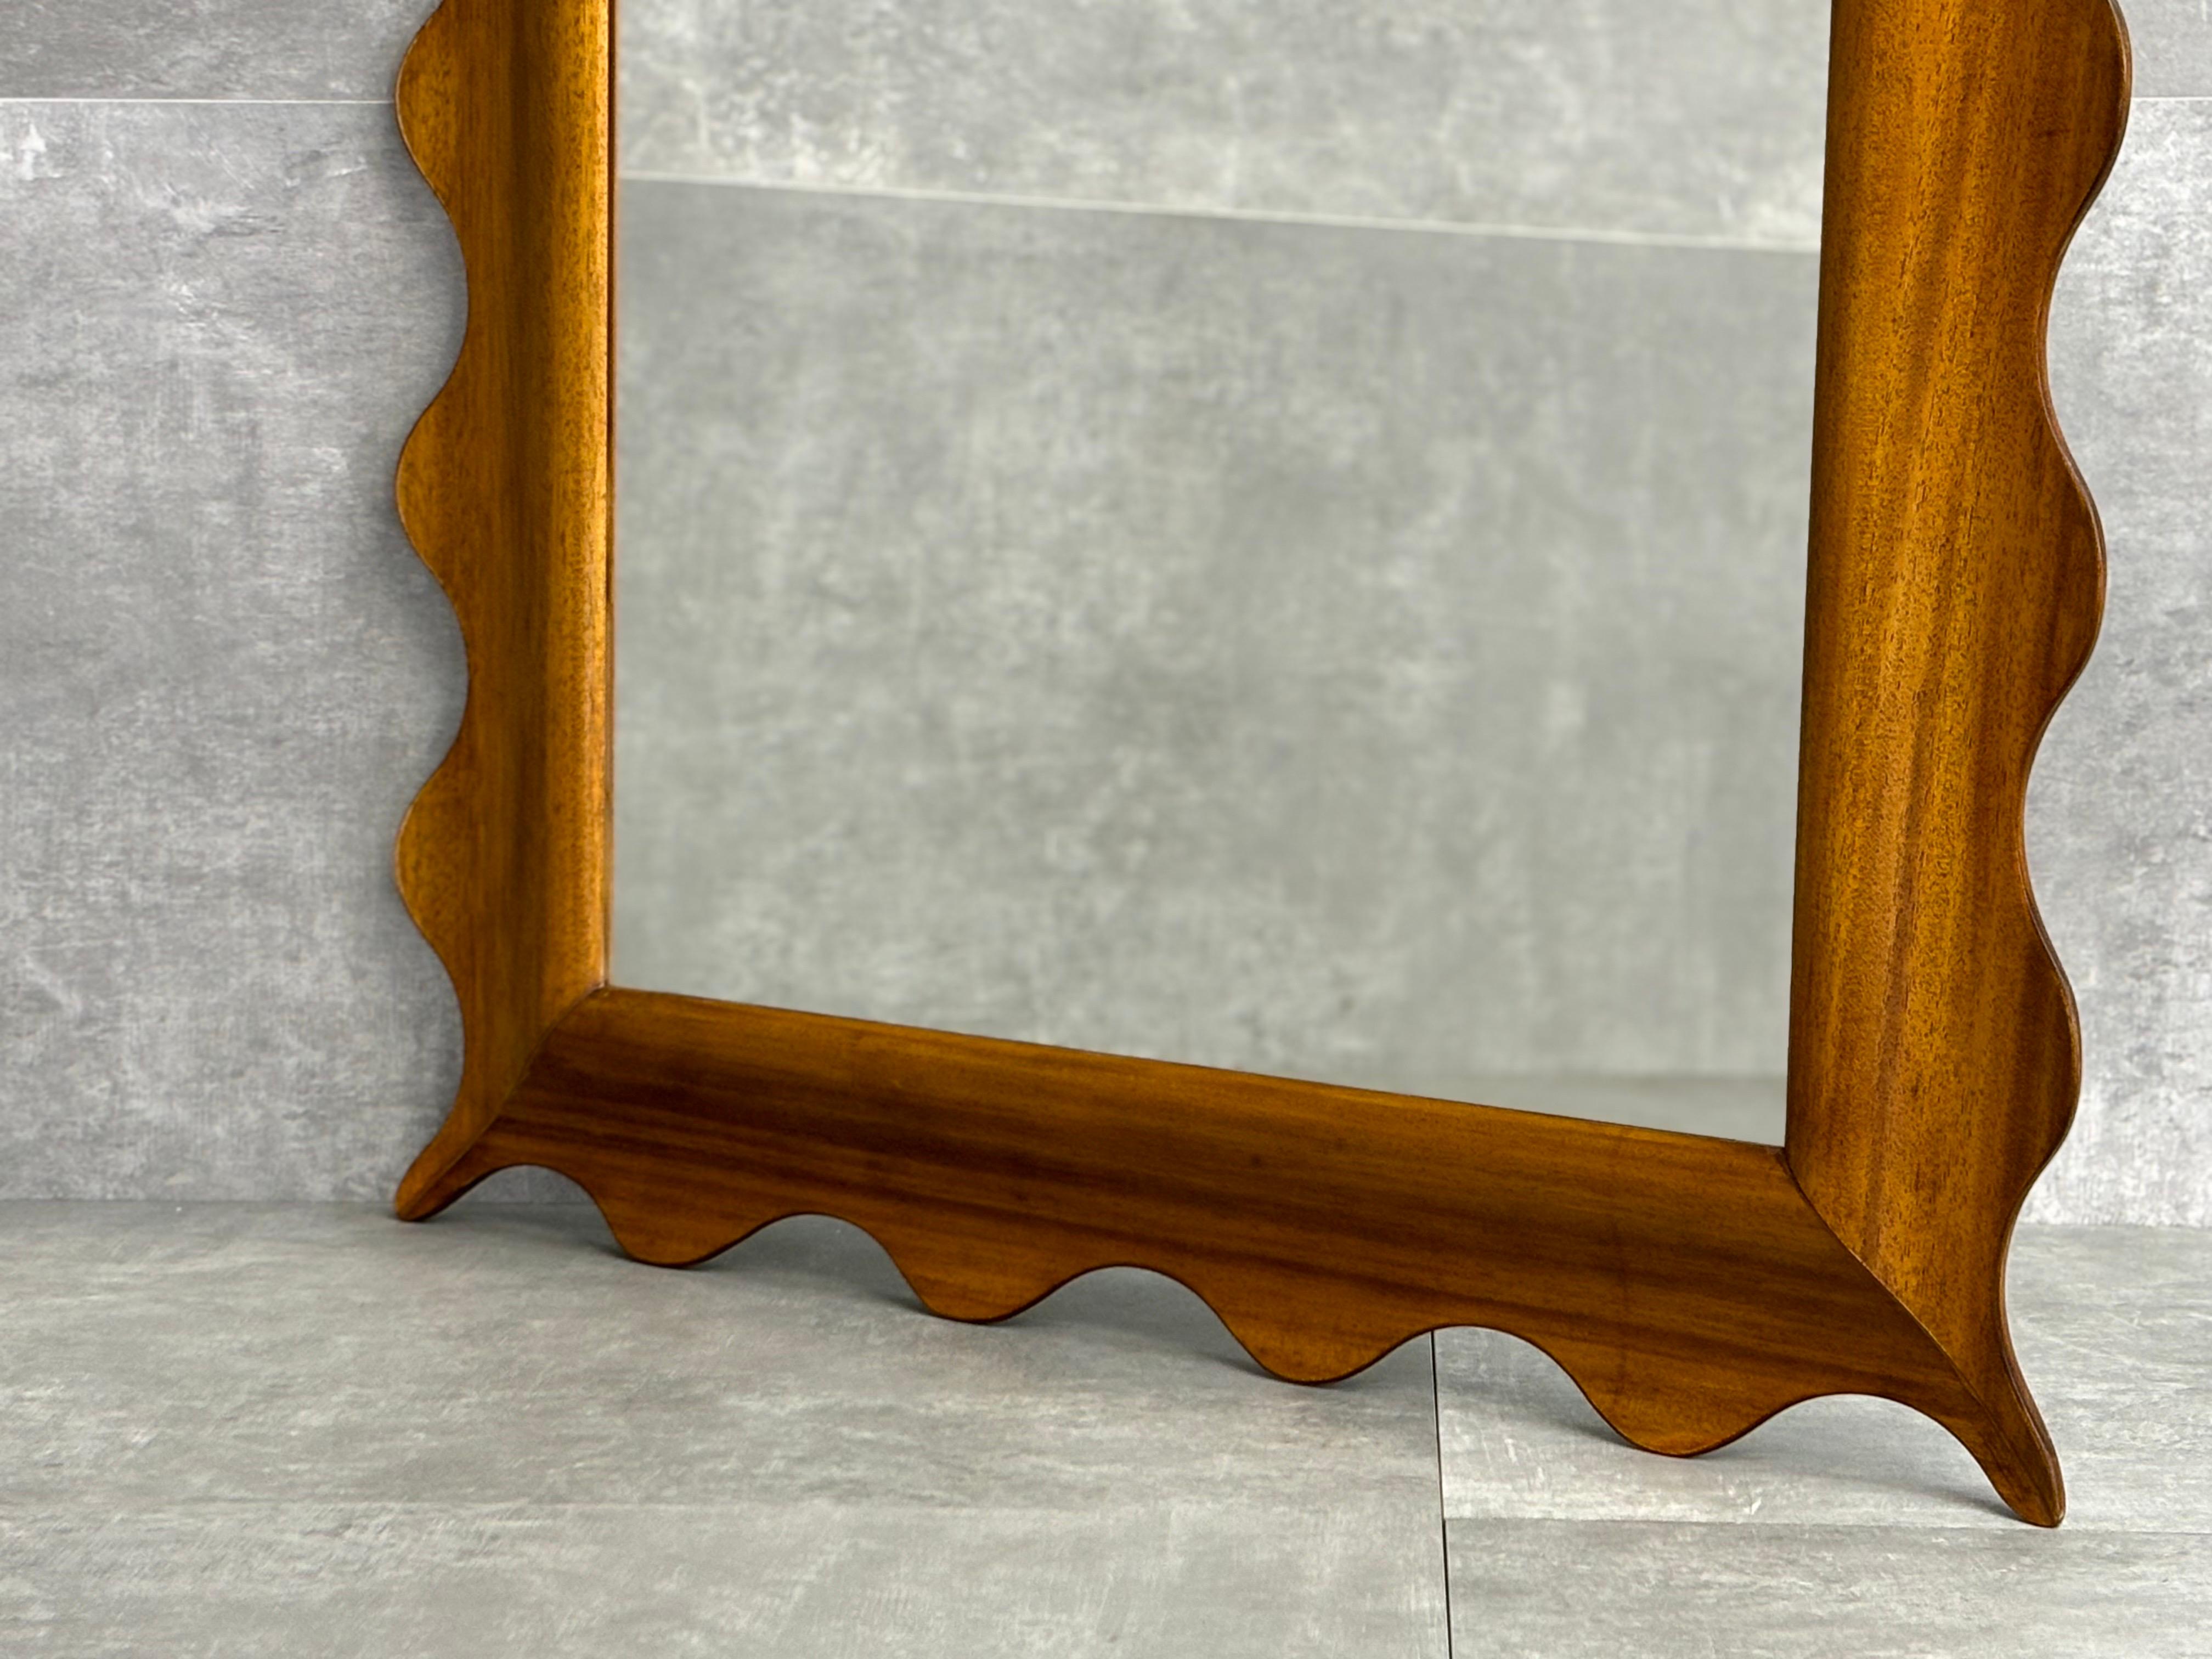 Specchio in legno con cornice ondulata, produzione contemporanea.